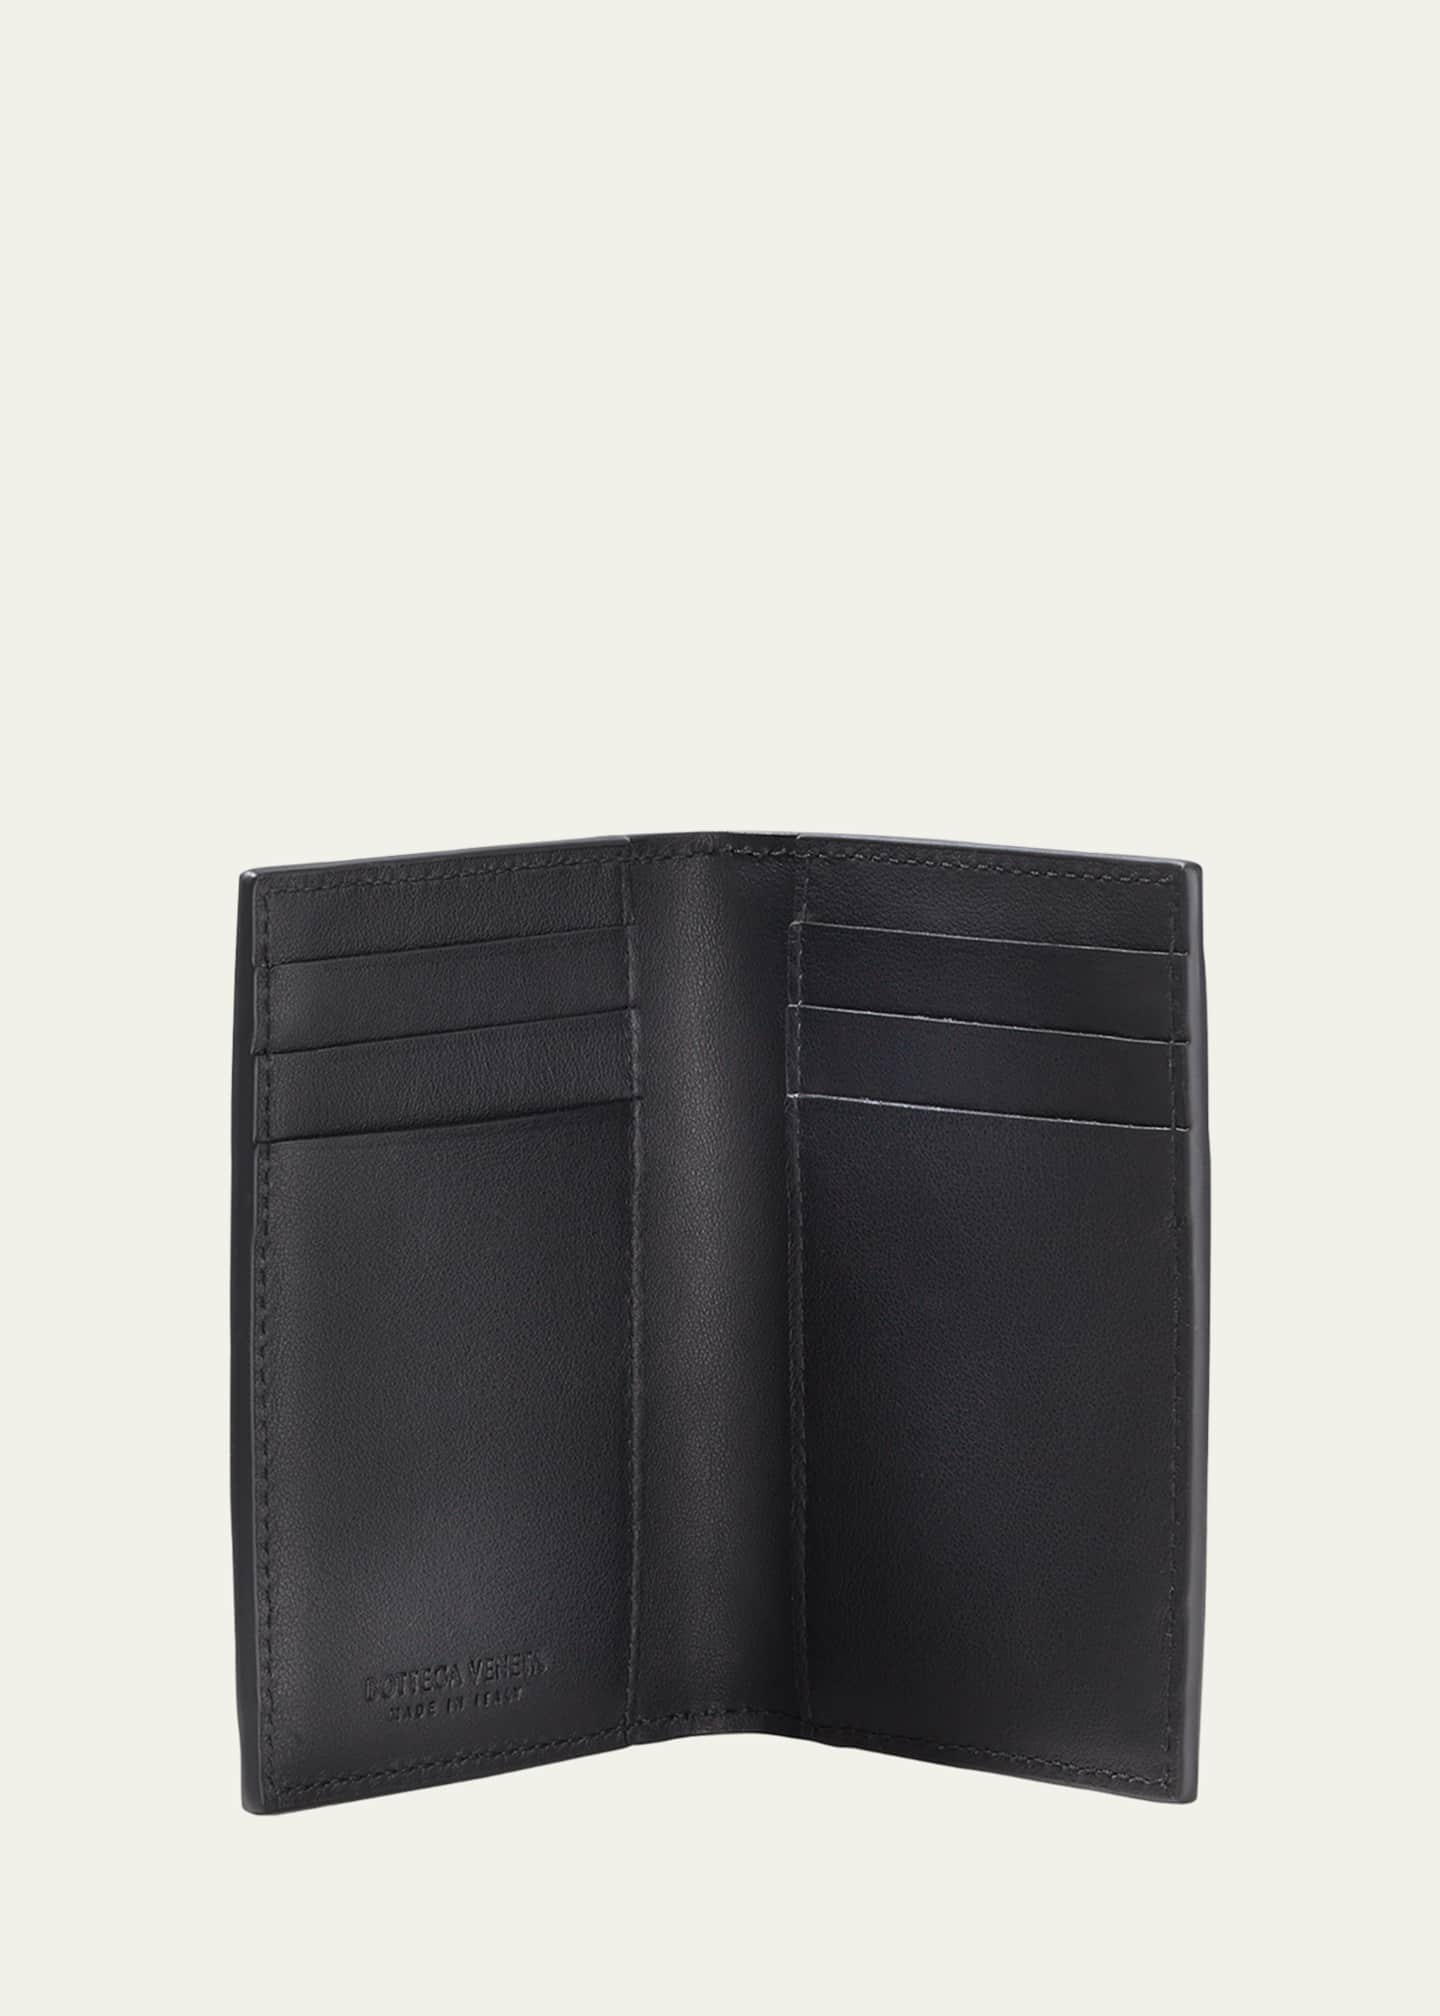 Bottega Veneta Men's Portacard Woven Leather Card Case - Bergdorf Goodman